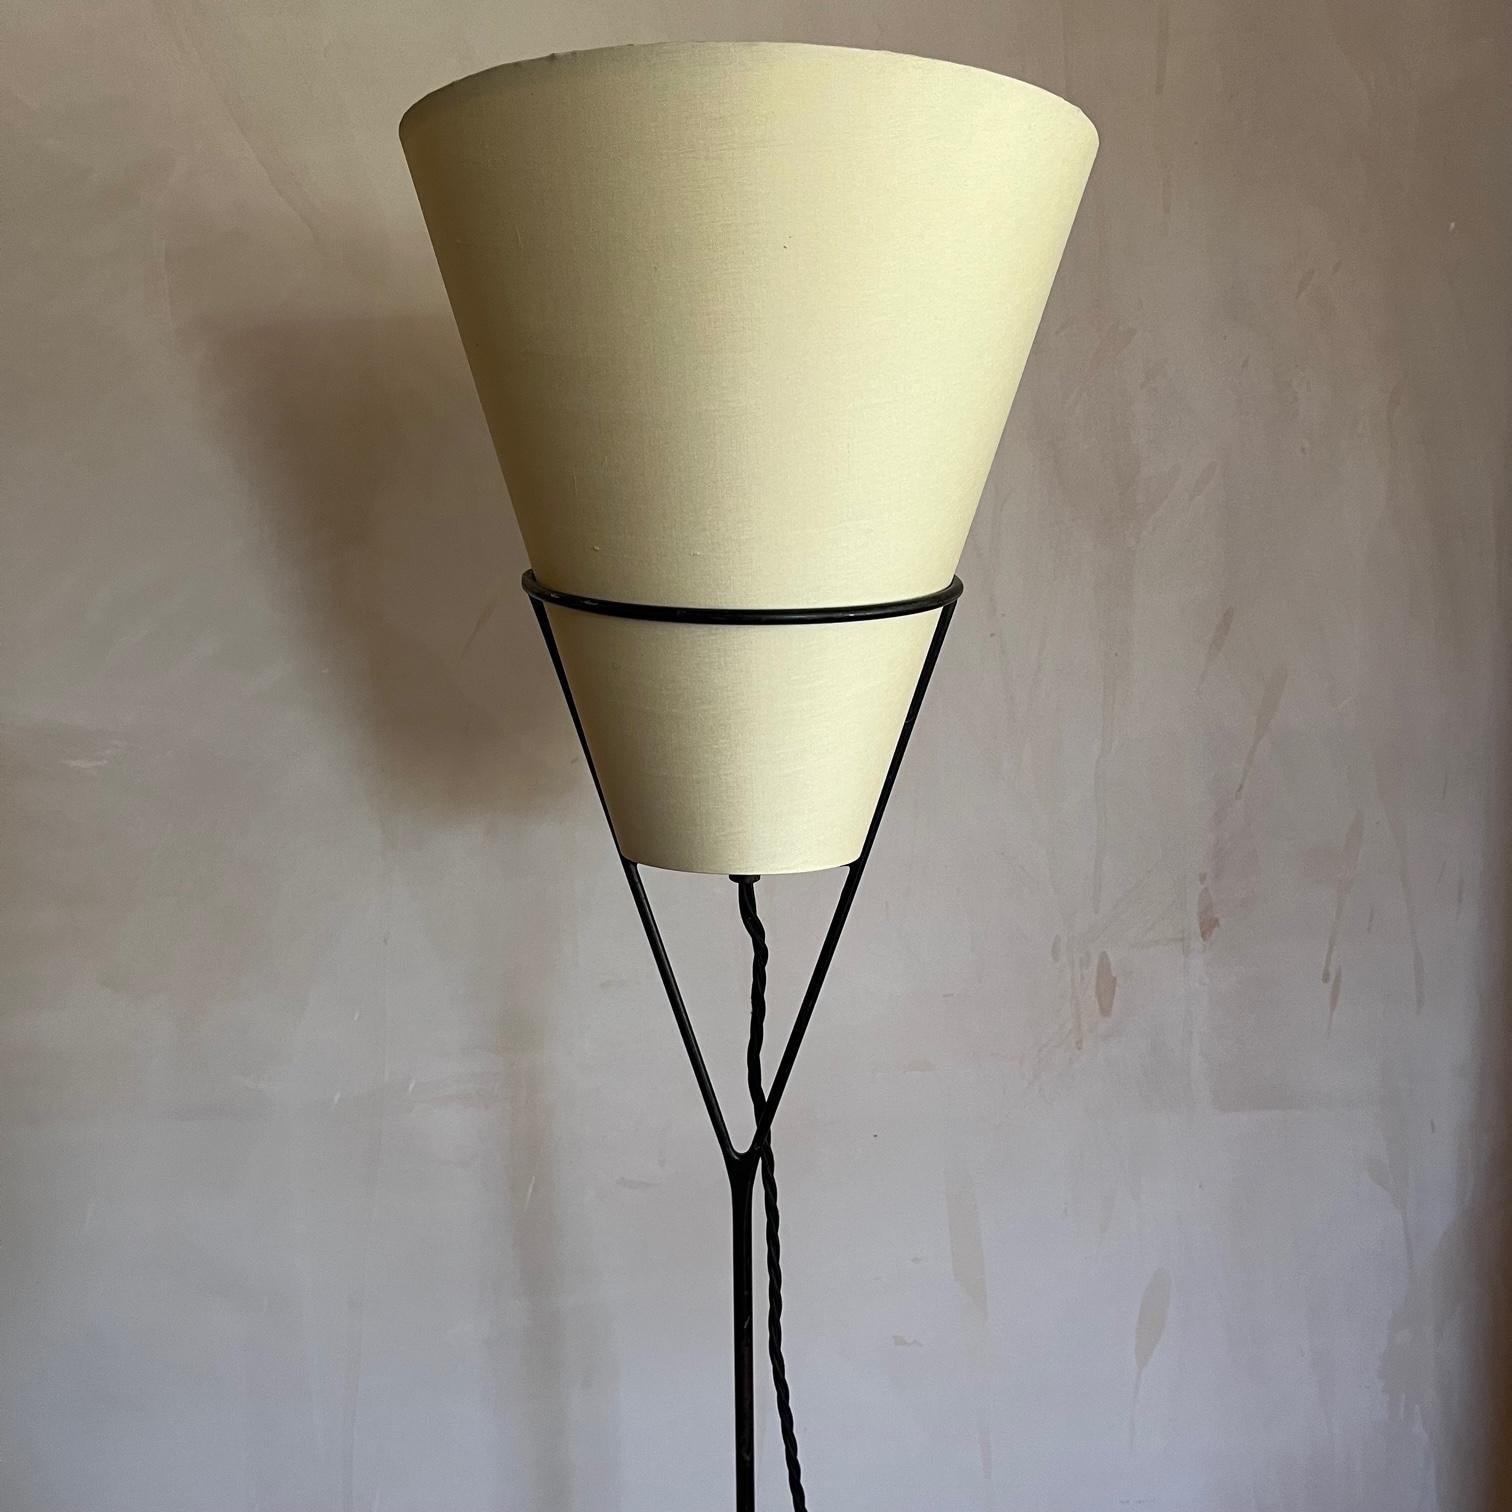 Ein Original aus der Mitte des Jahrhunderts  Umgekehrt oder Topsy Turvy  Stehlampe. Hergestellt aus Gusseisen, entworfen von Carl Auböck, Wien, 1951-1952, ausgeführt von der Werkstätte Carl Auböck.
Ein gutes frühes Beispiel für diese Lampe. Einige